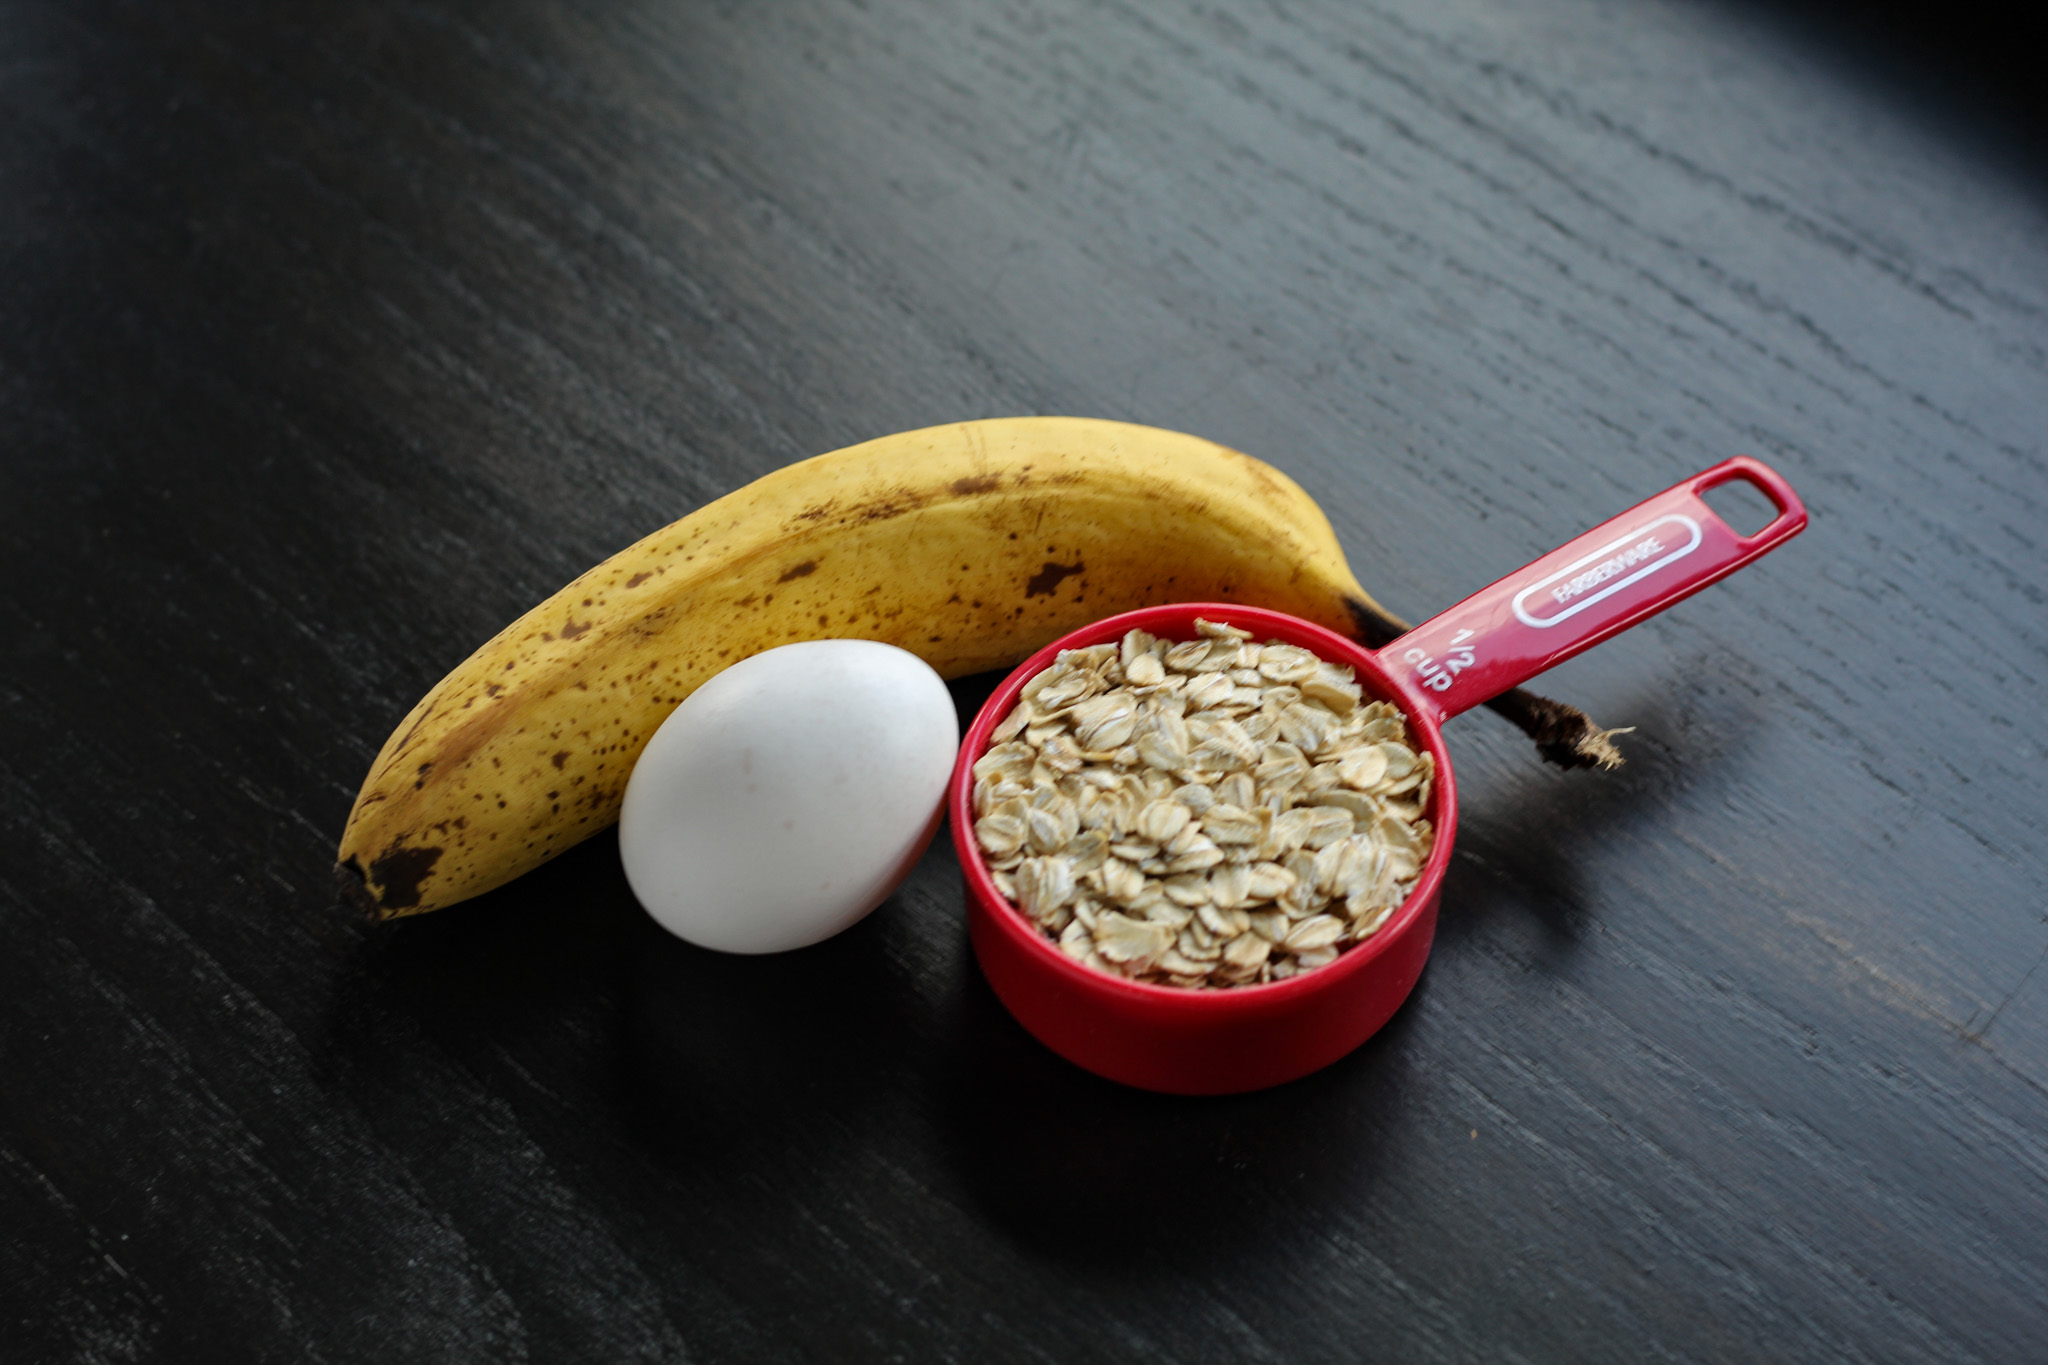 Banana, egg, and oatmeal sitting on a cutting board.